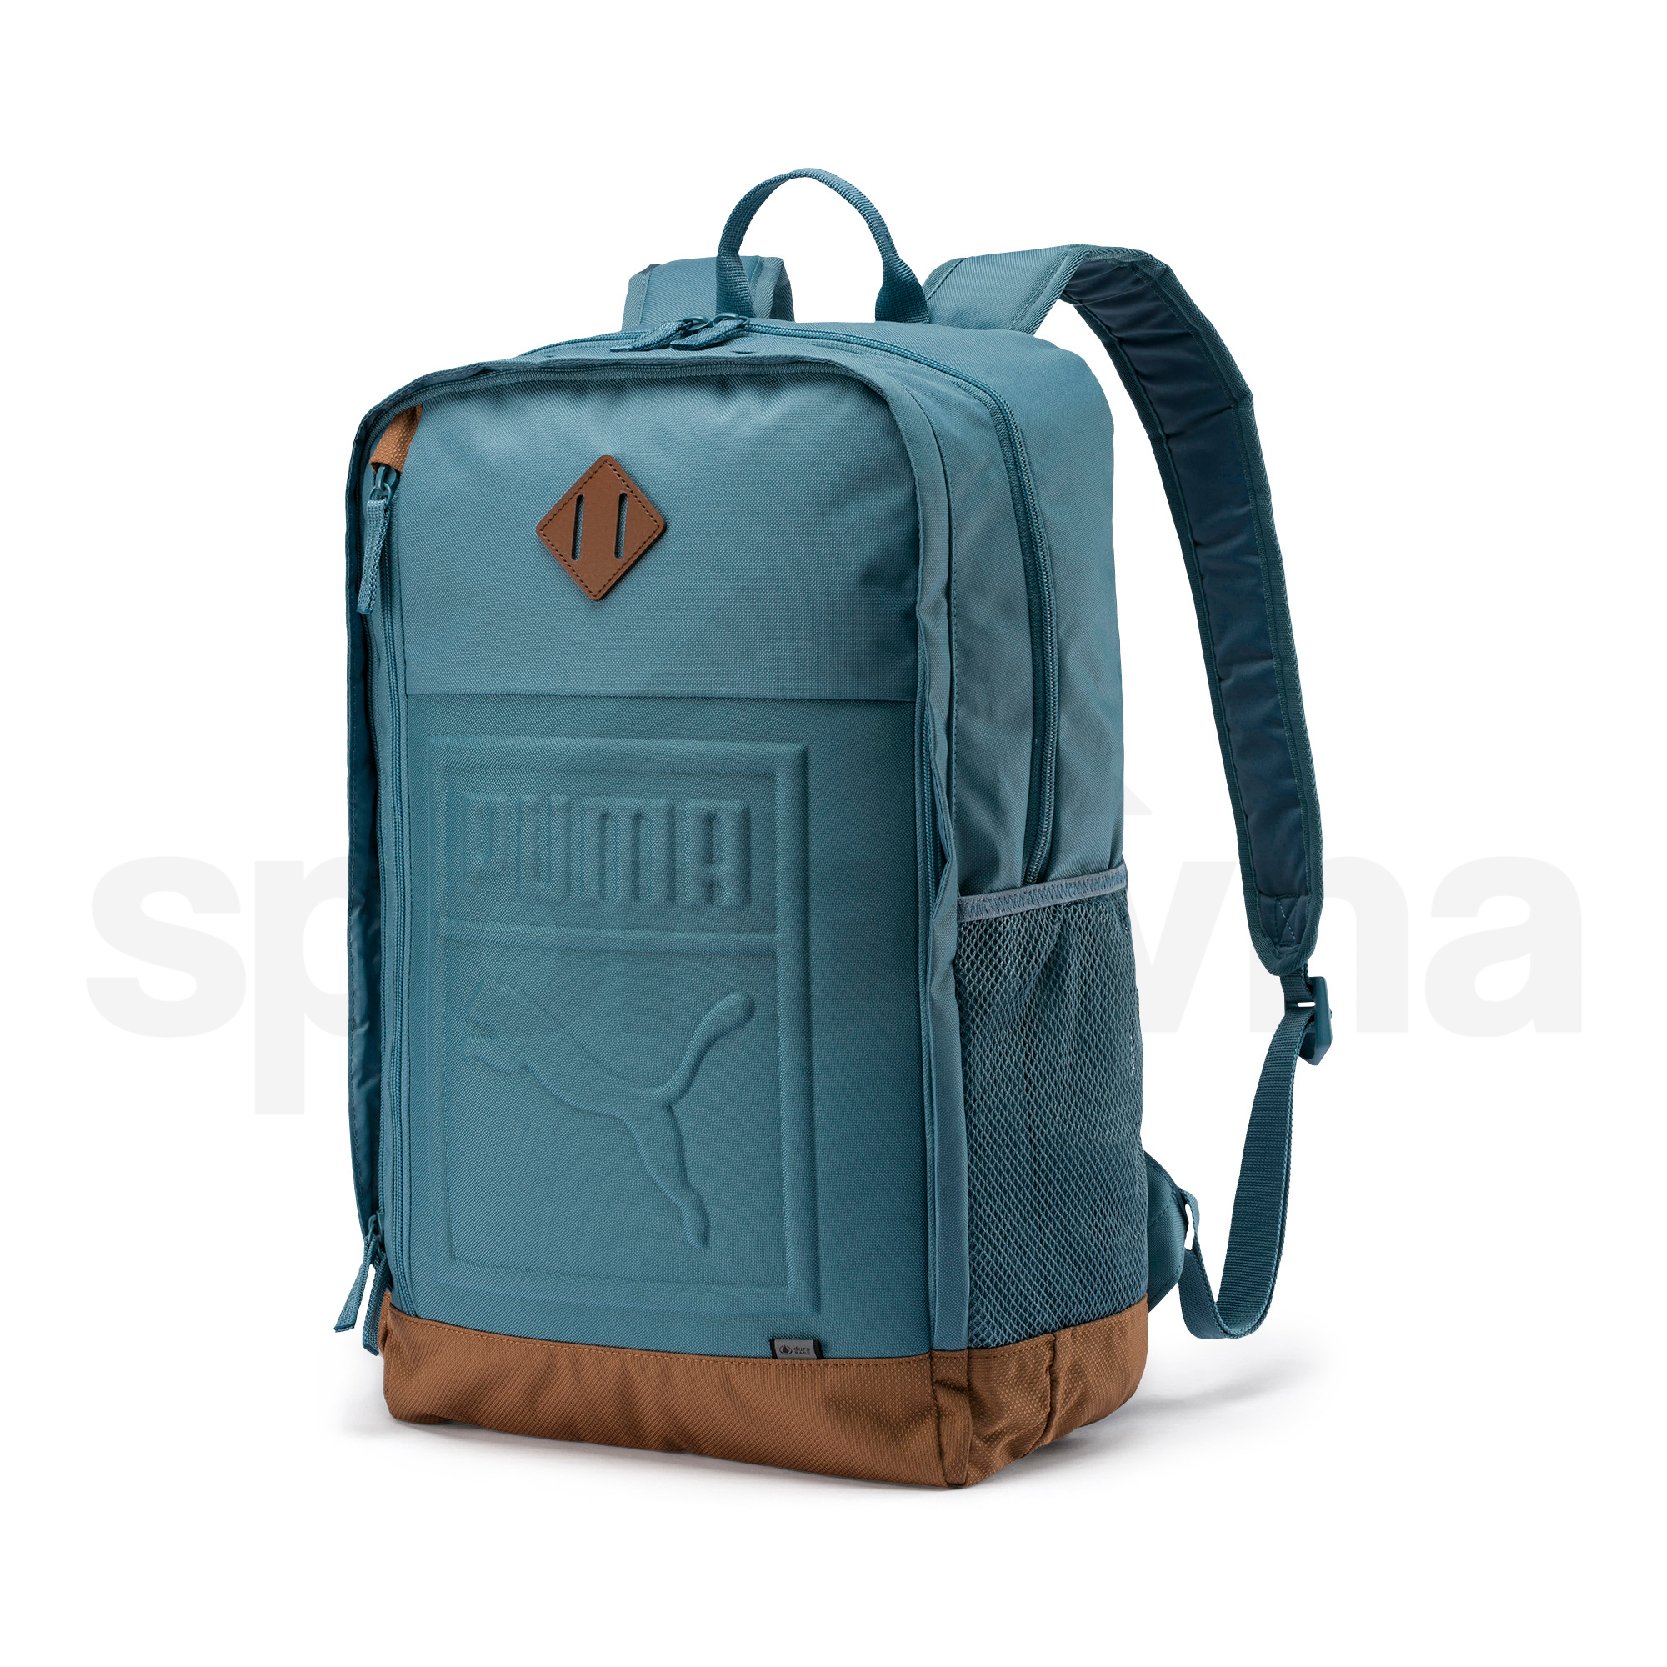 Batoh Puma S Backpack - modrá/hnědá